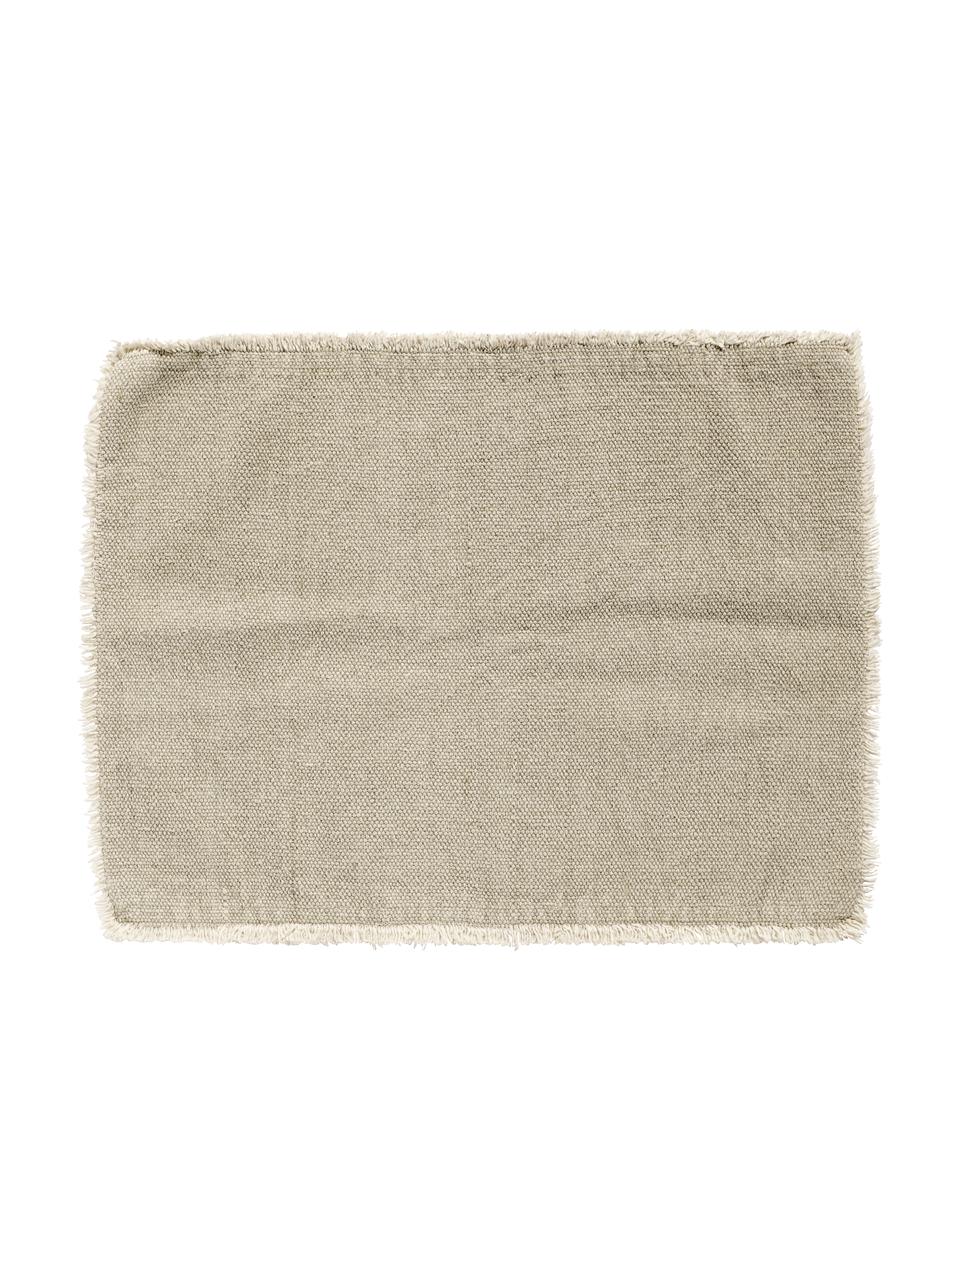 Podkładka z bawełny Edge, 6 szt., Mieszanka bawełny, efekt sprania, Beżowy, S 35 x D 48 cm